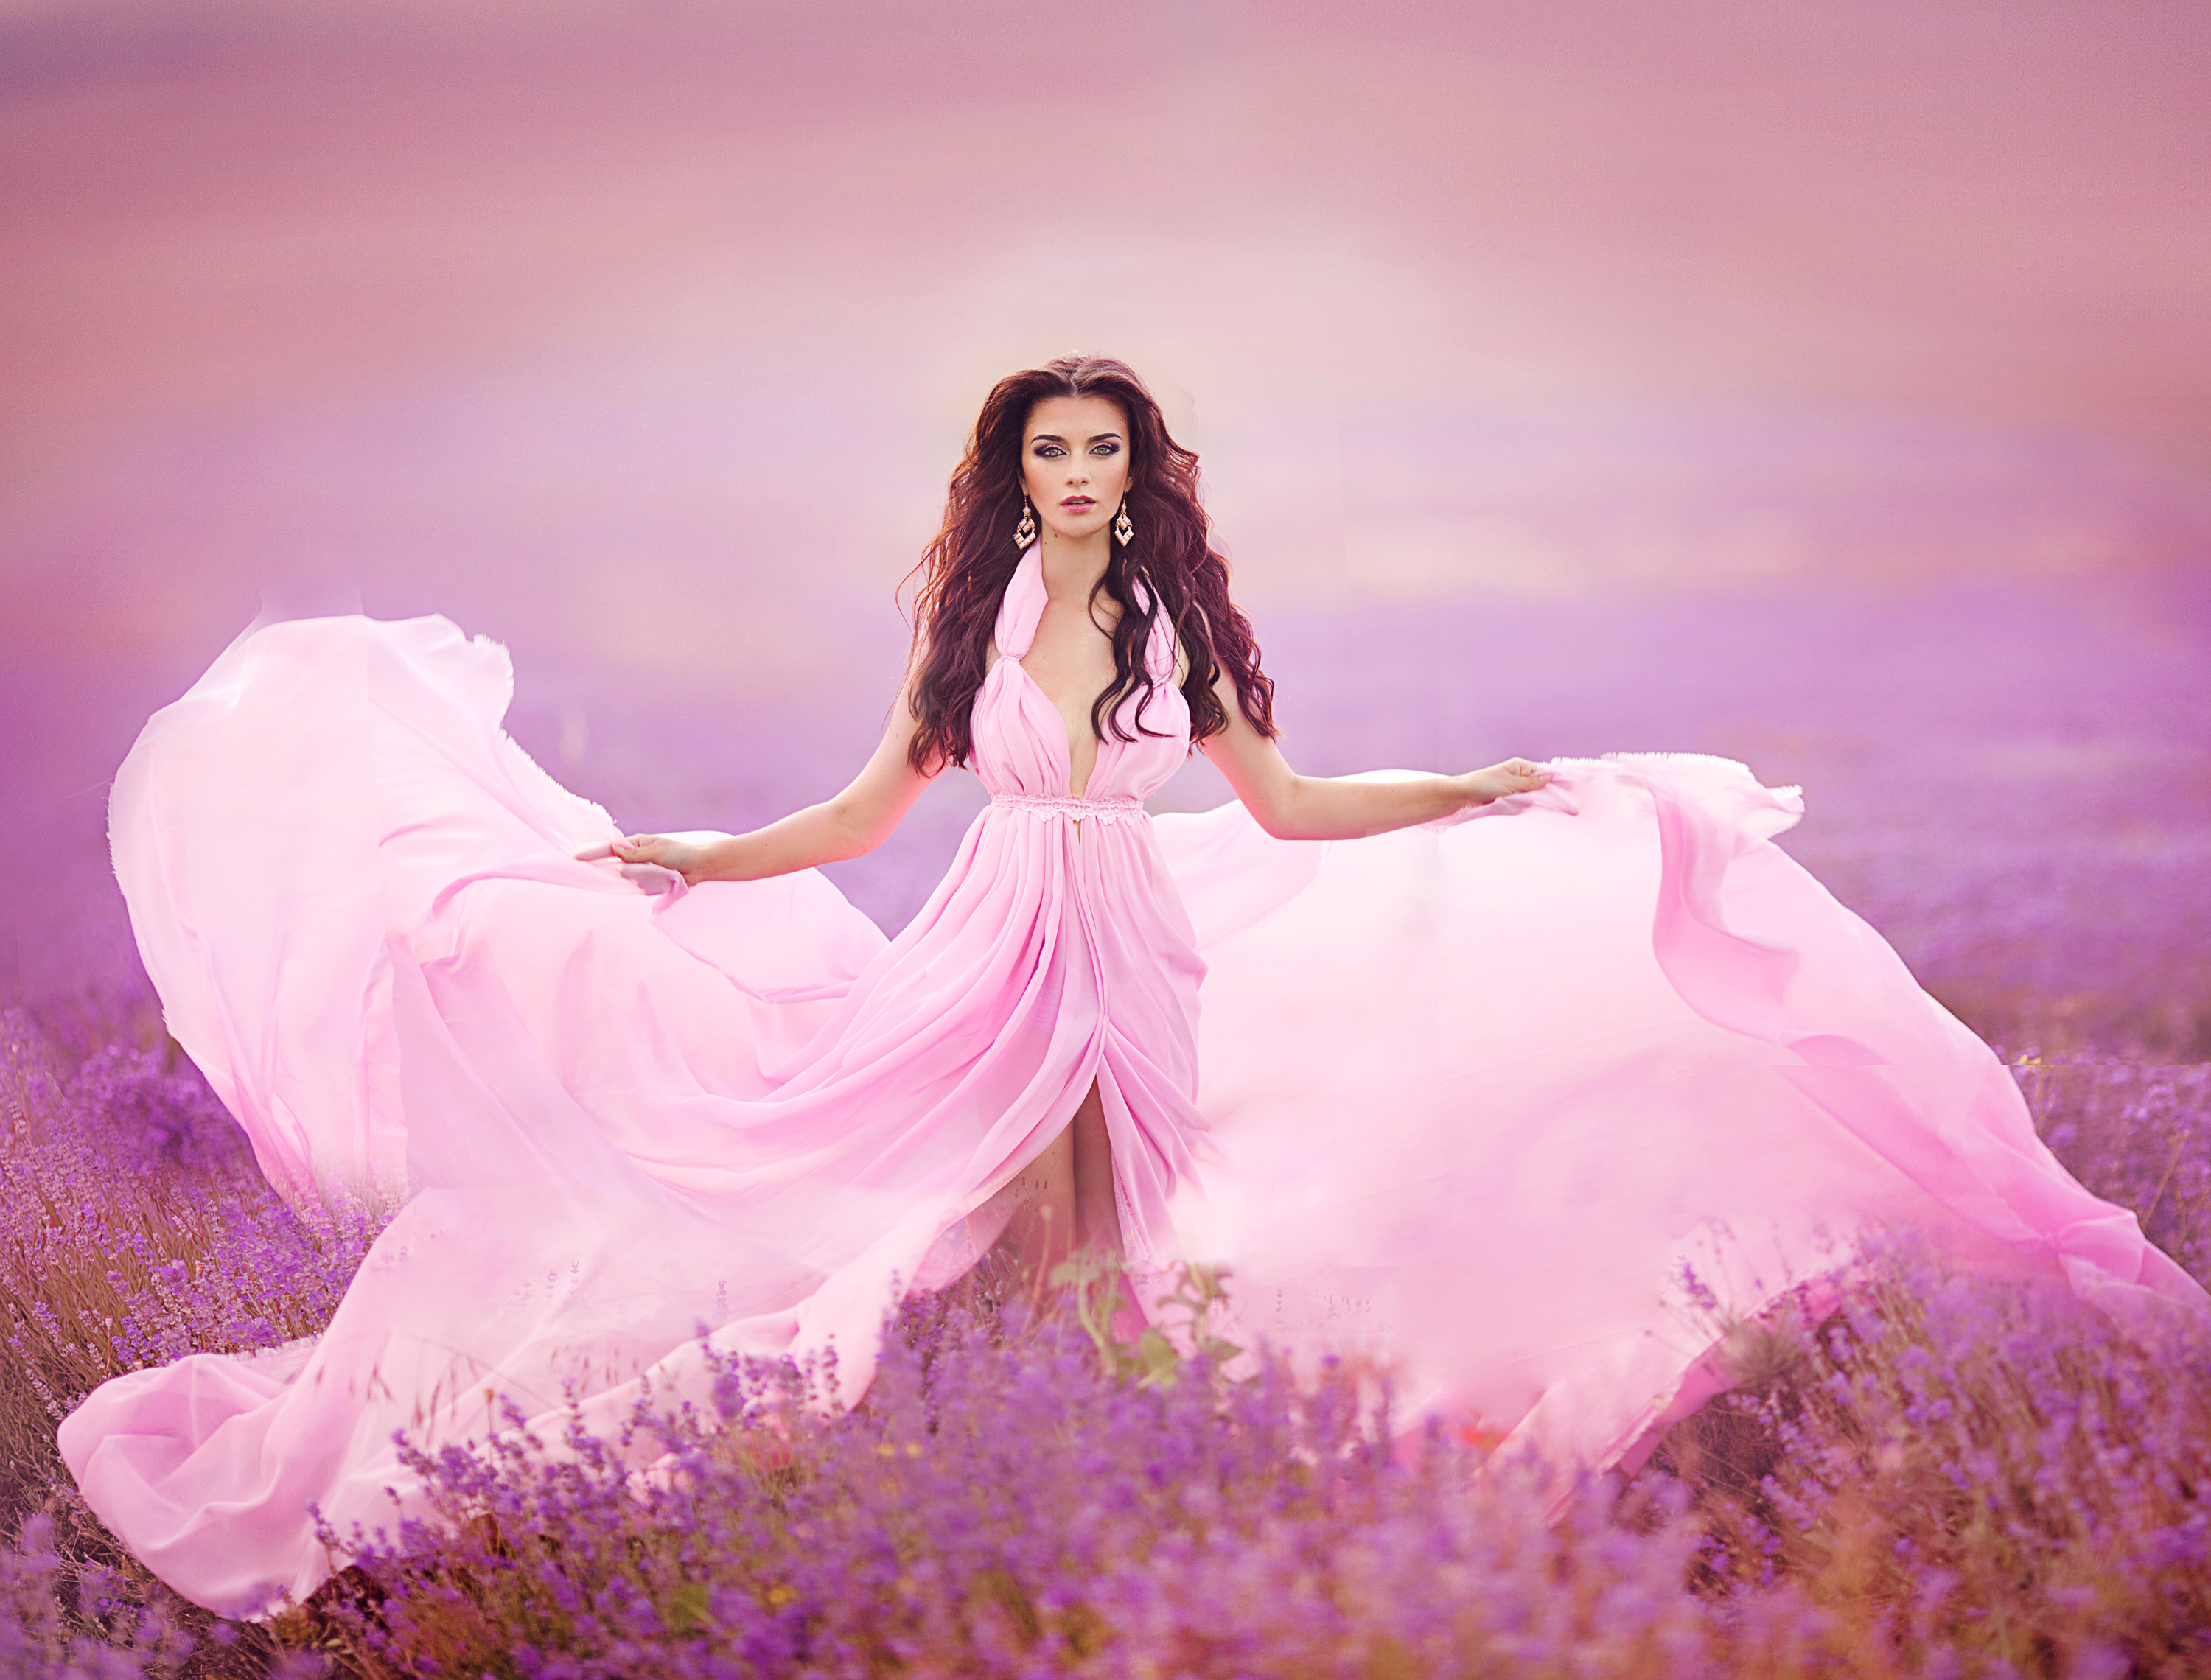 Woman Lavender Field , HD Wallpaper & Backgrounds